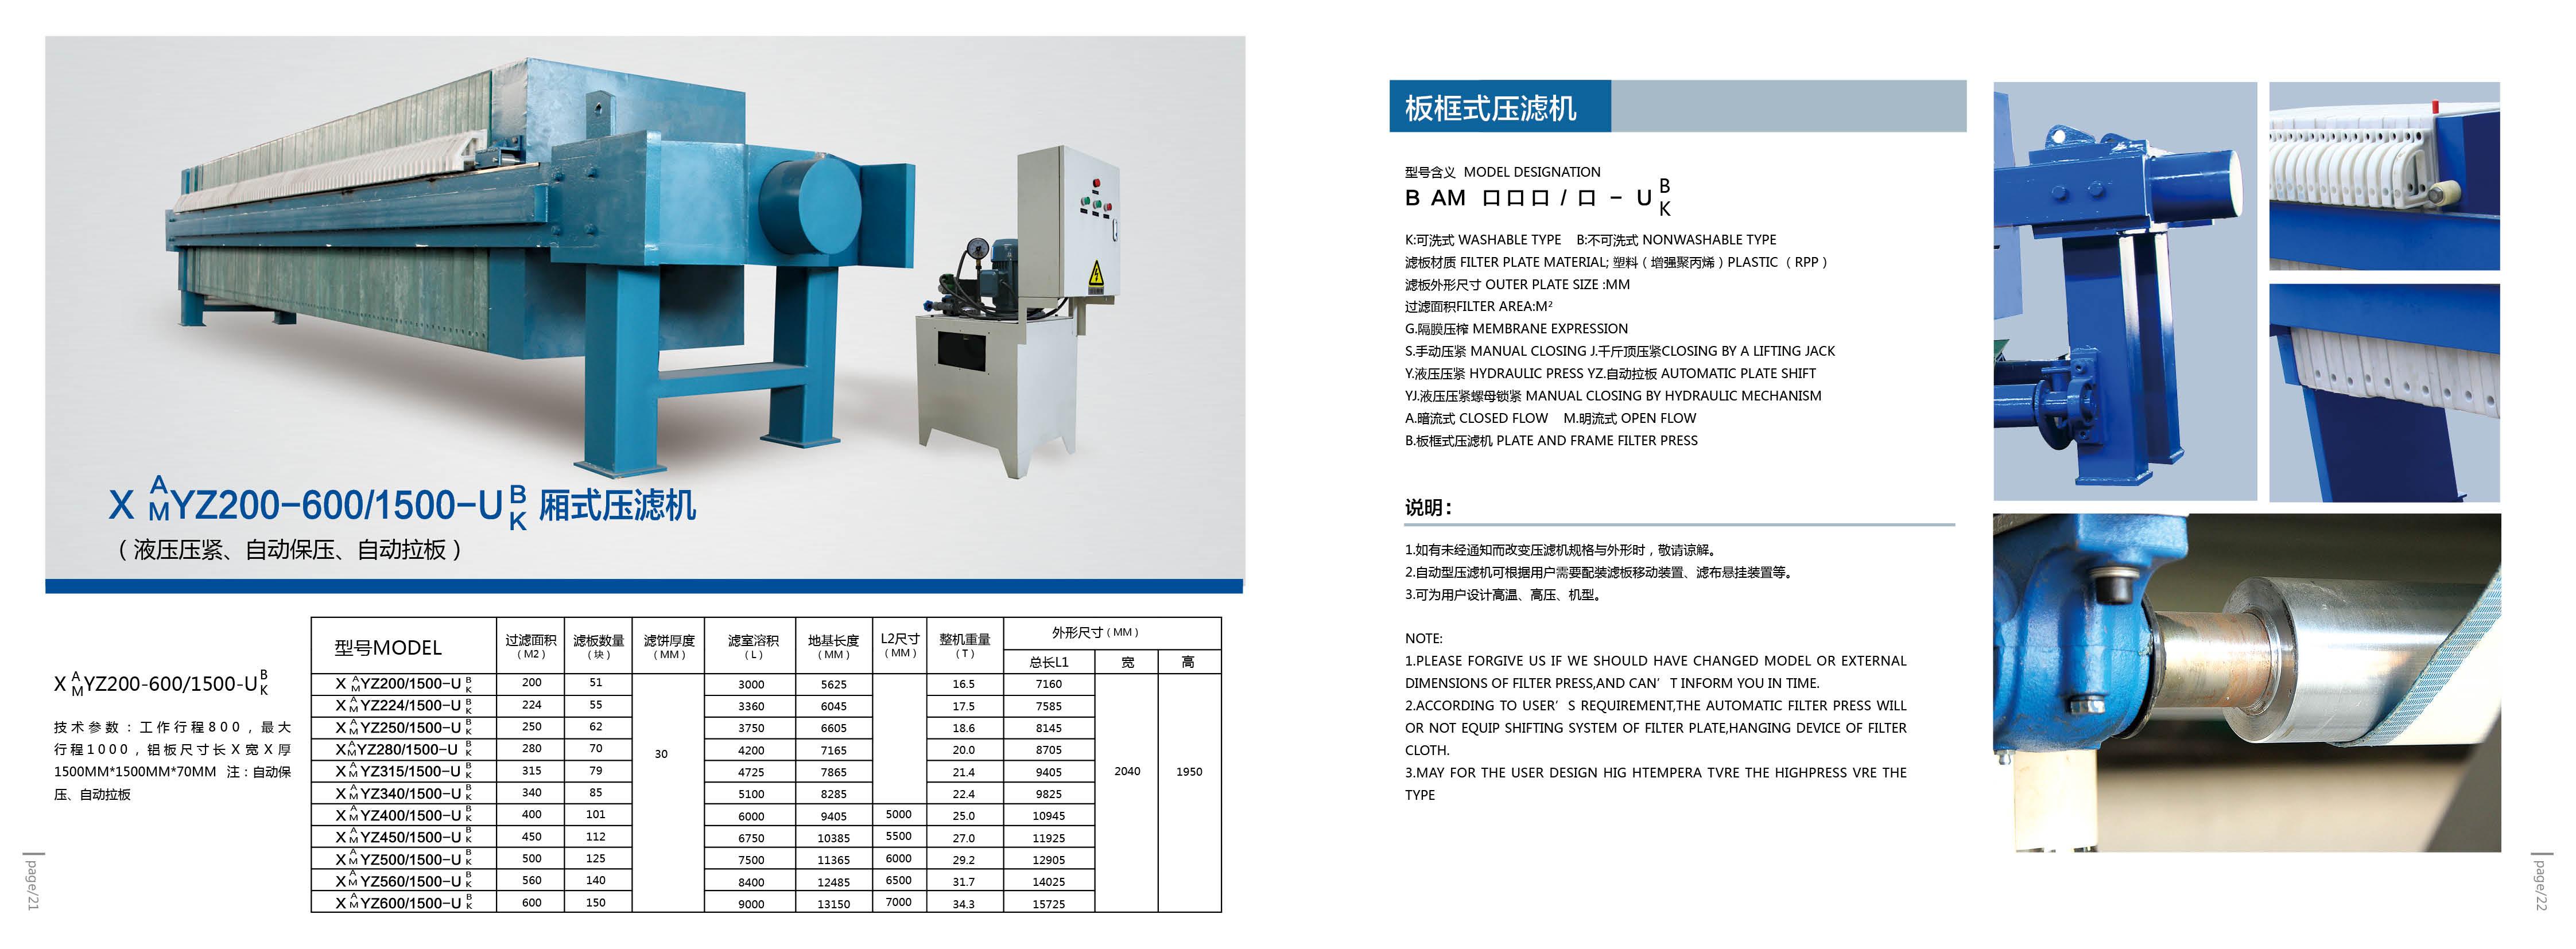 隔膜压滤机环保产品XG200/1250-UB